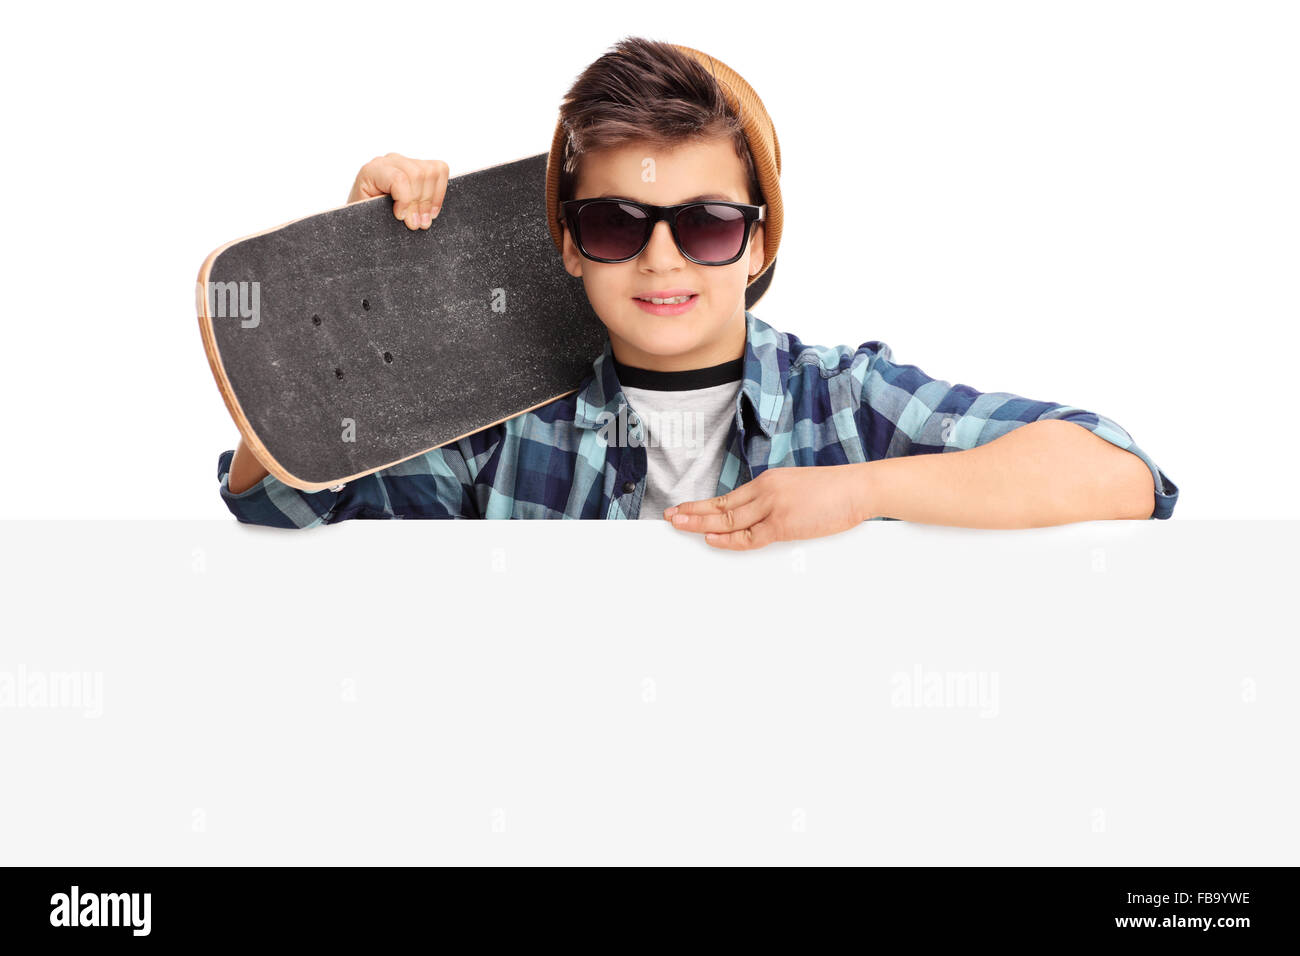 Petit garçon avec des lunettes de la tenue d'un skateboard et posant derrière un panneau isolé sur fond blanc Banque D'Images